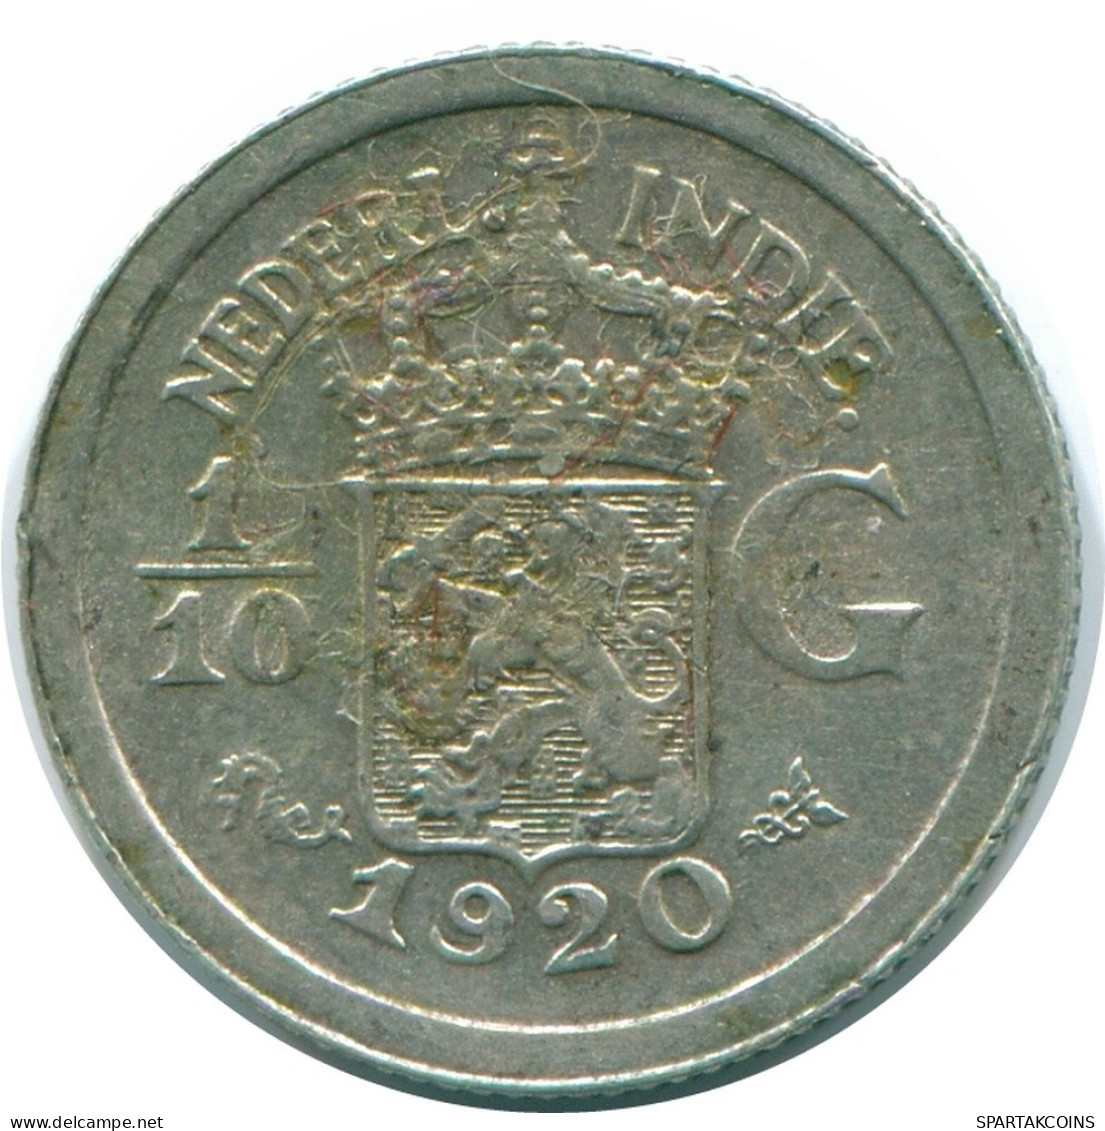 1/10 GULDEN 1920 NETHERLANDS EAST INDIES SILVER Colonial Coin #NL13410.3.U.A - Niederländisch-Indien